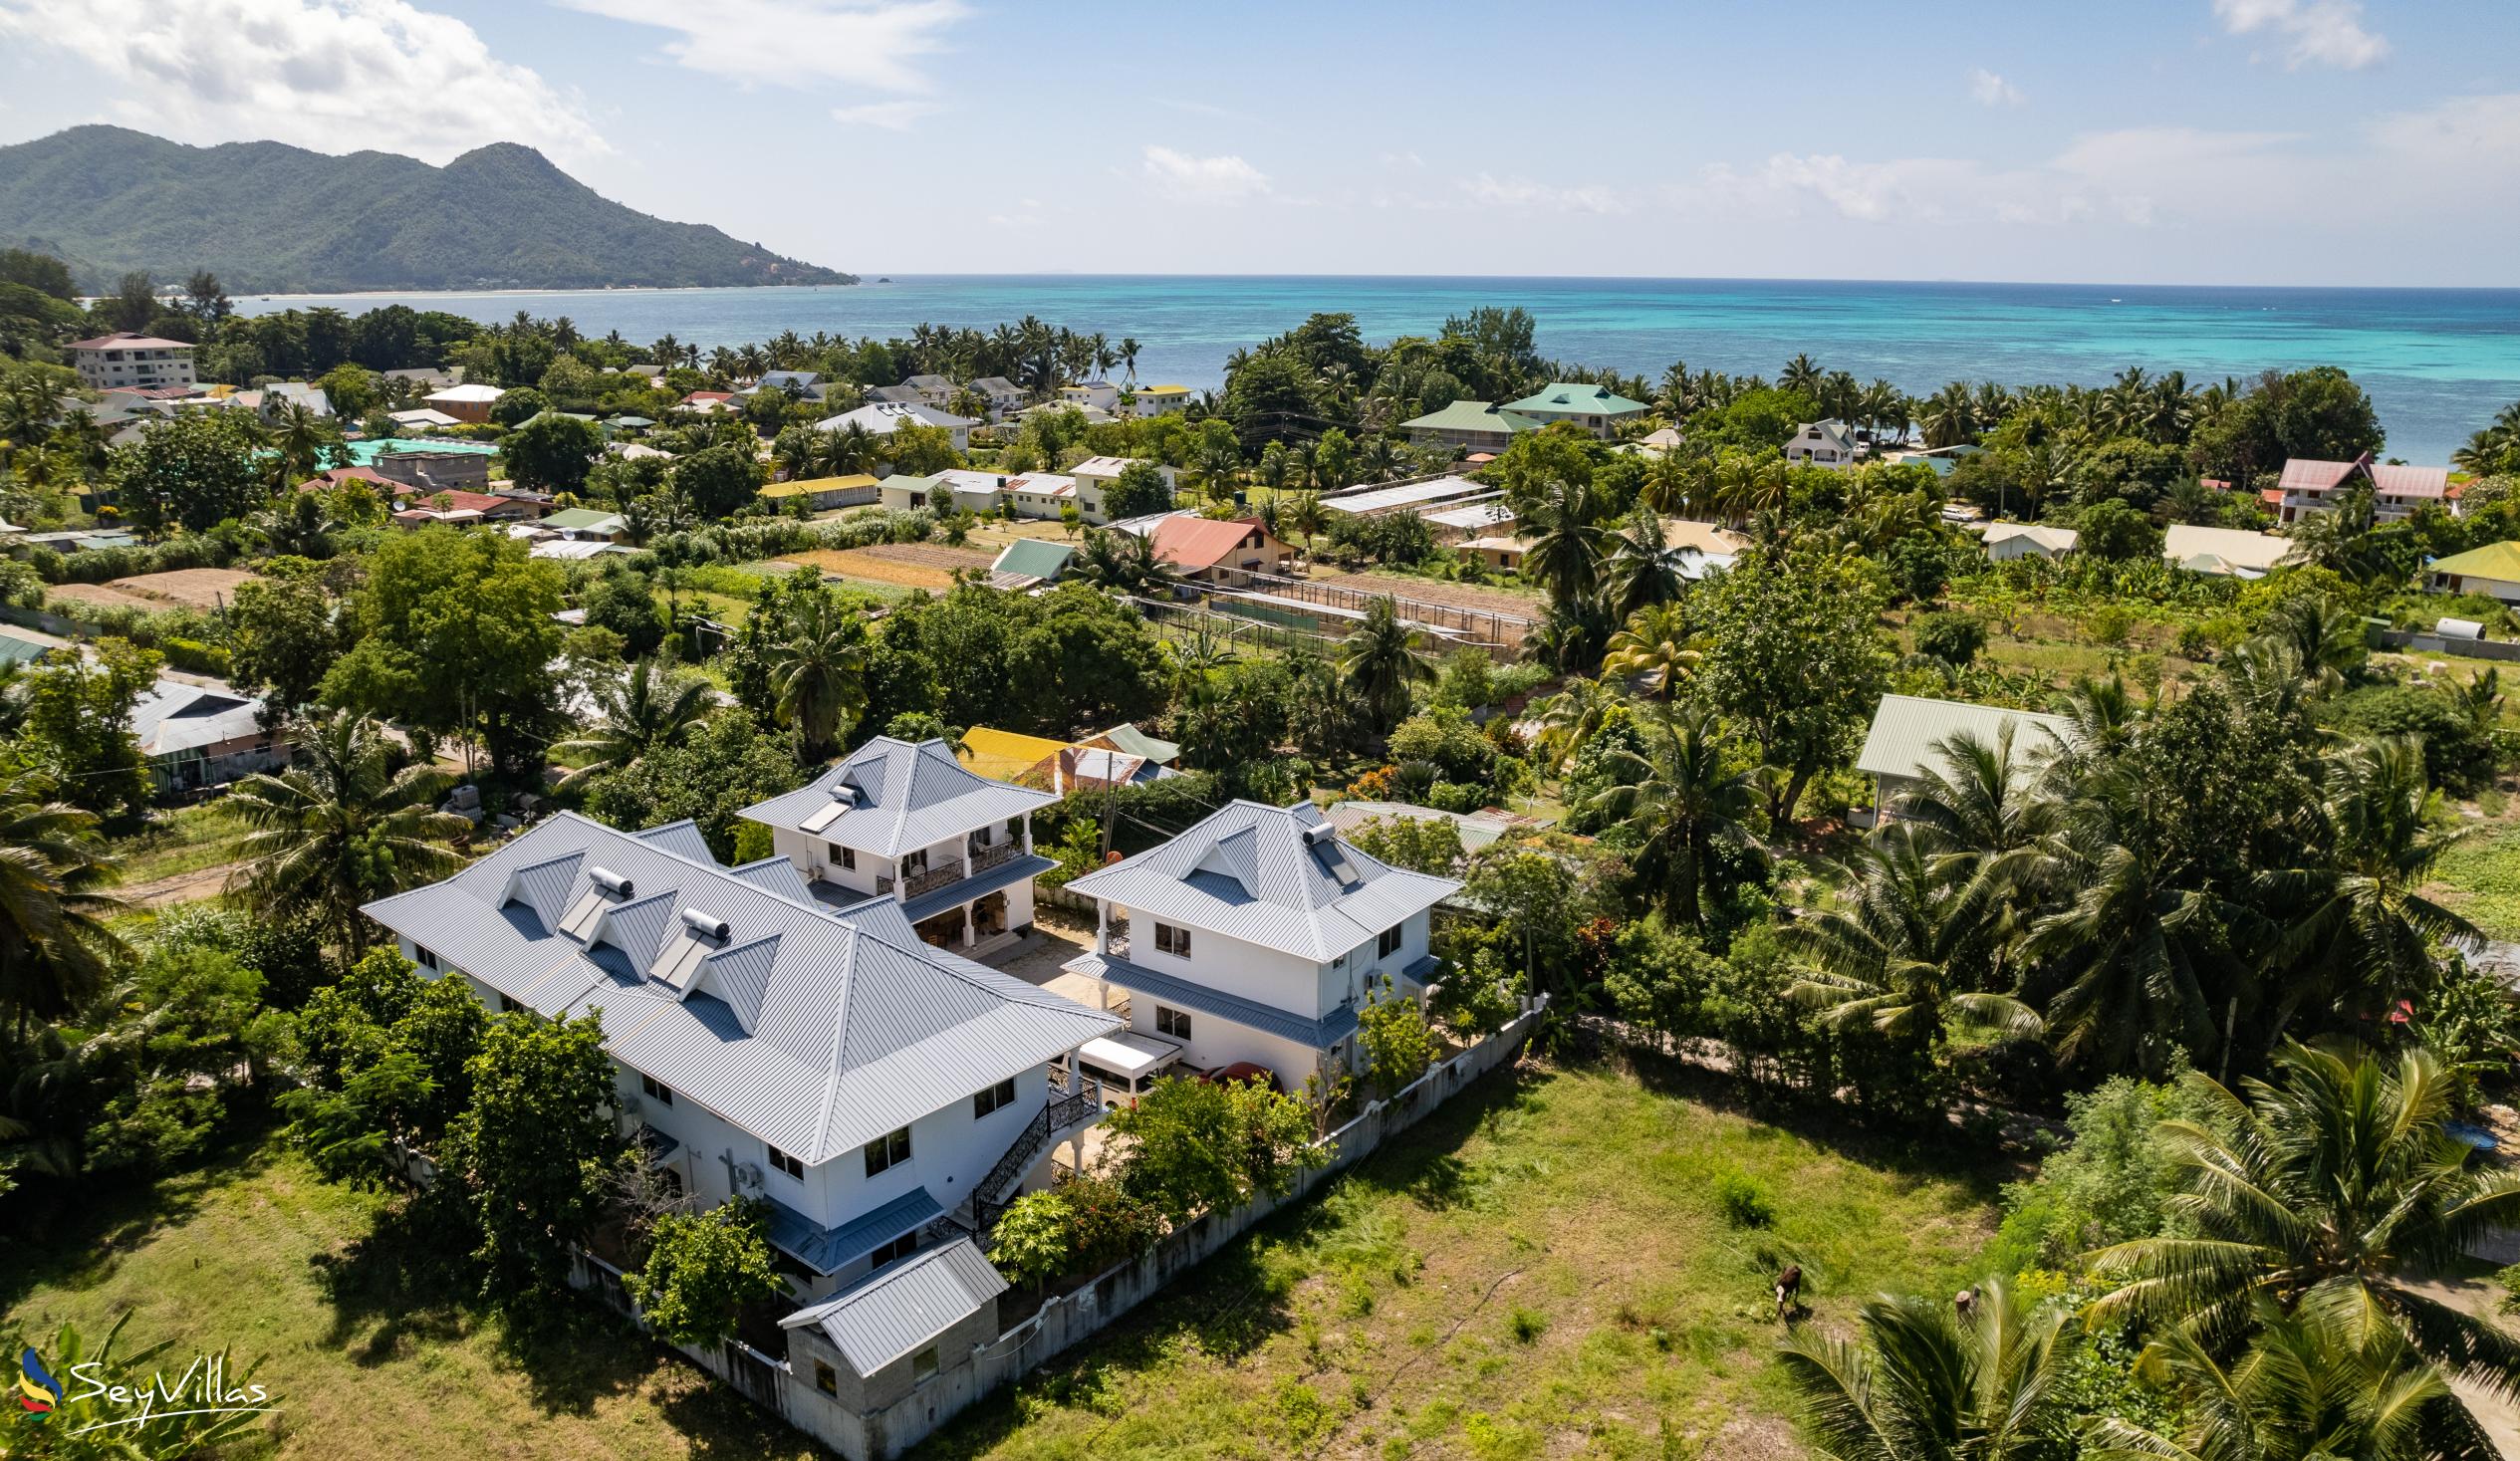 Foto 13: Casadani Luxury Guest House - Aussenbereich - Praslin (Seychellen)